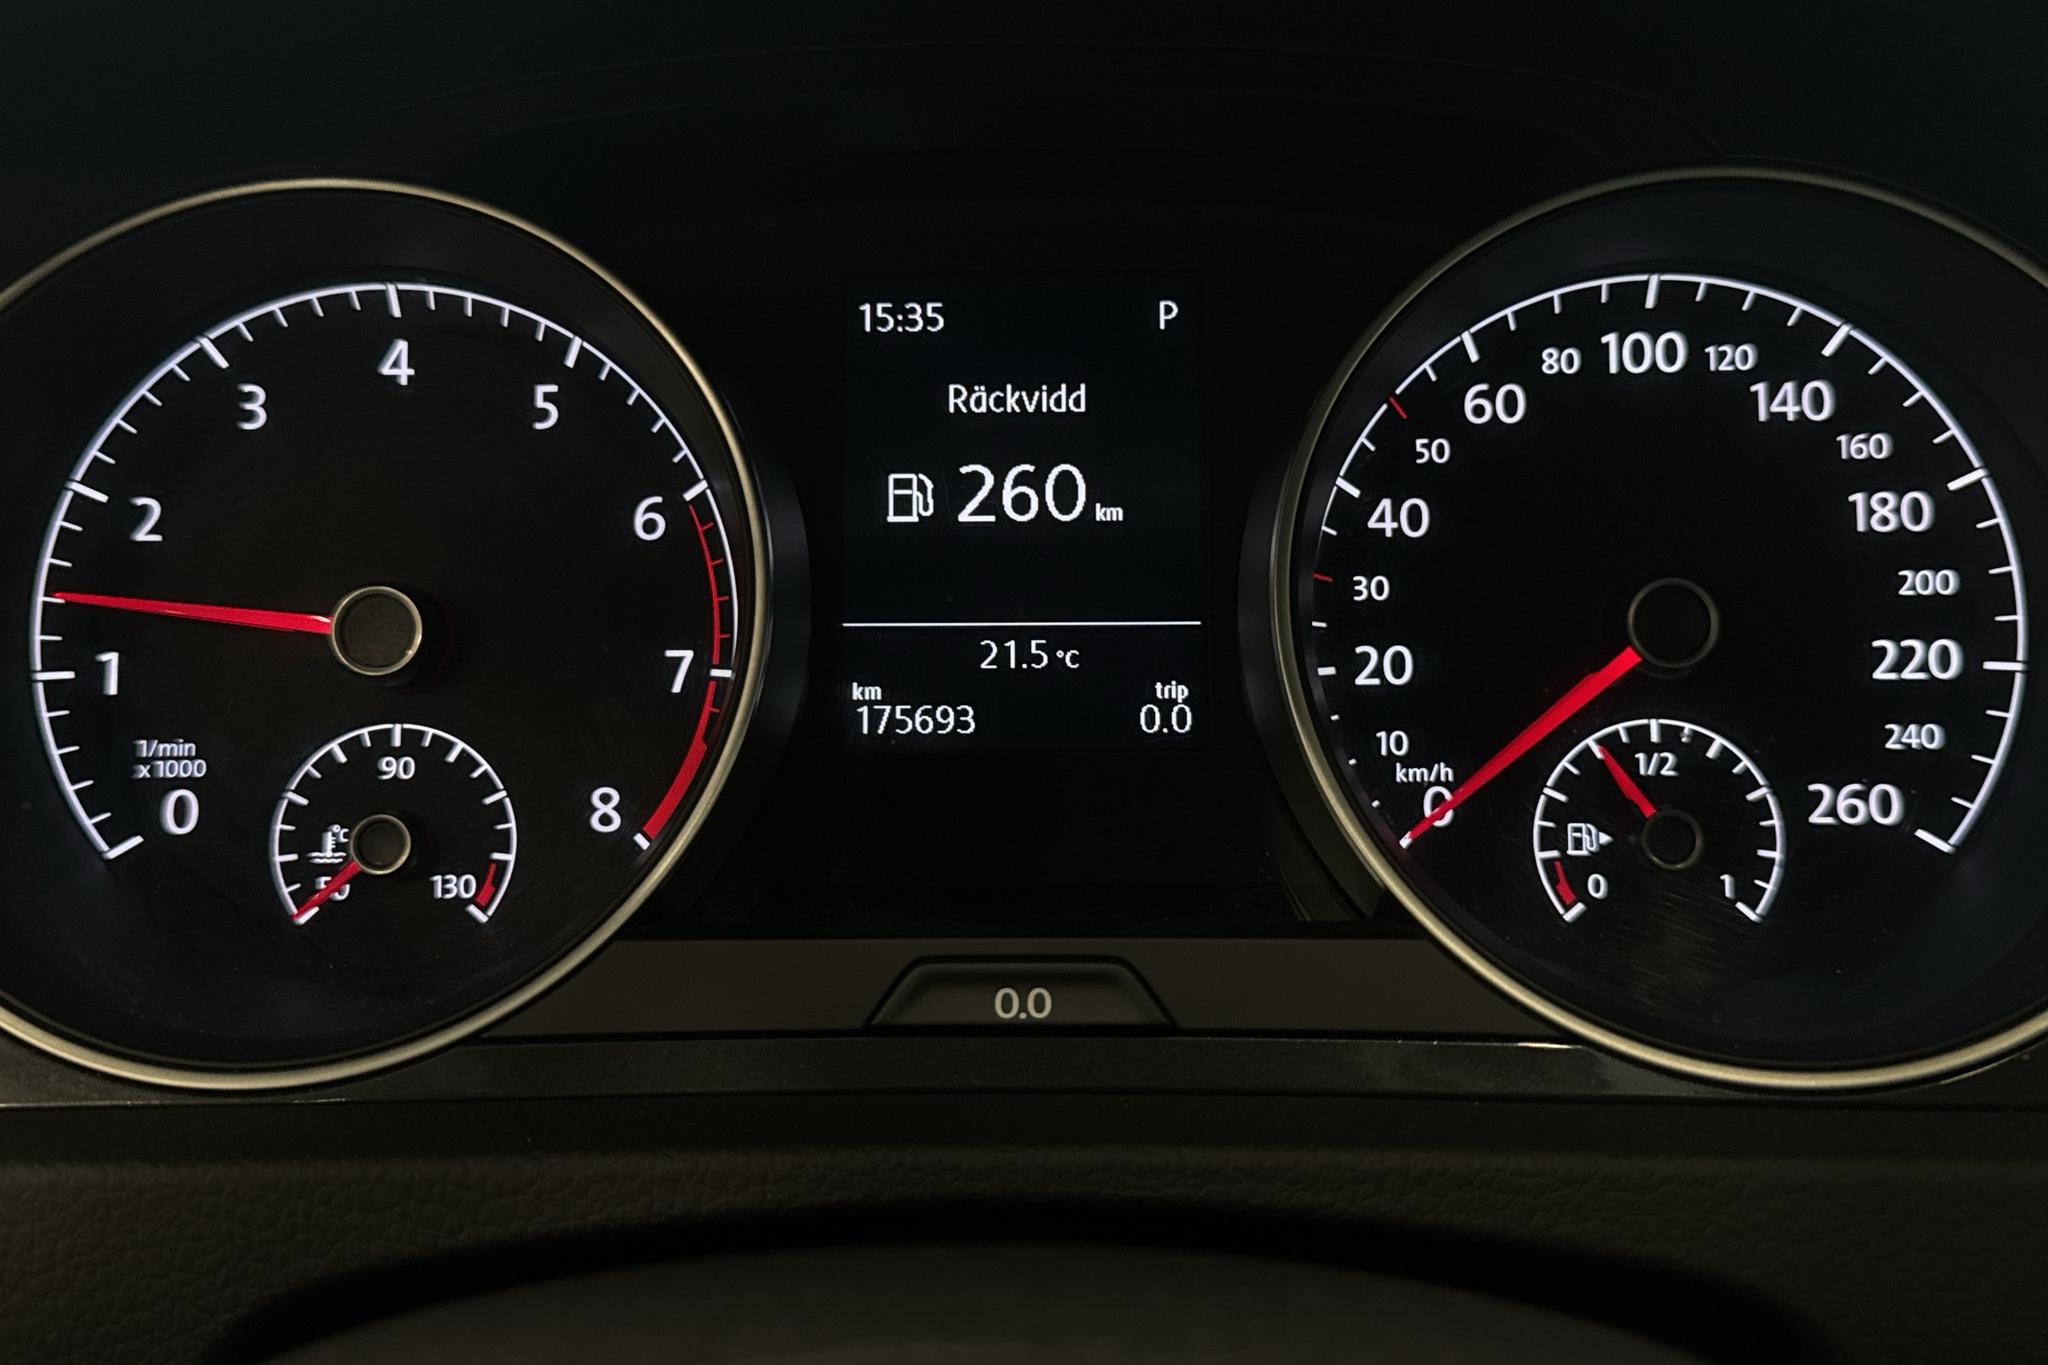 VW Golf VII 1.0 TSI 5dr (115hk) - 175 690 km - Automatyczna - czarny - 2019